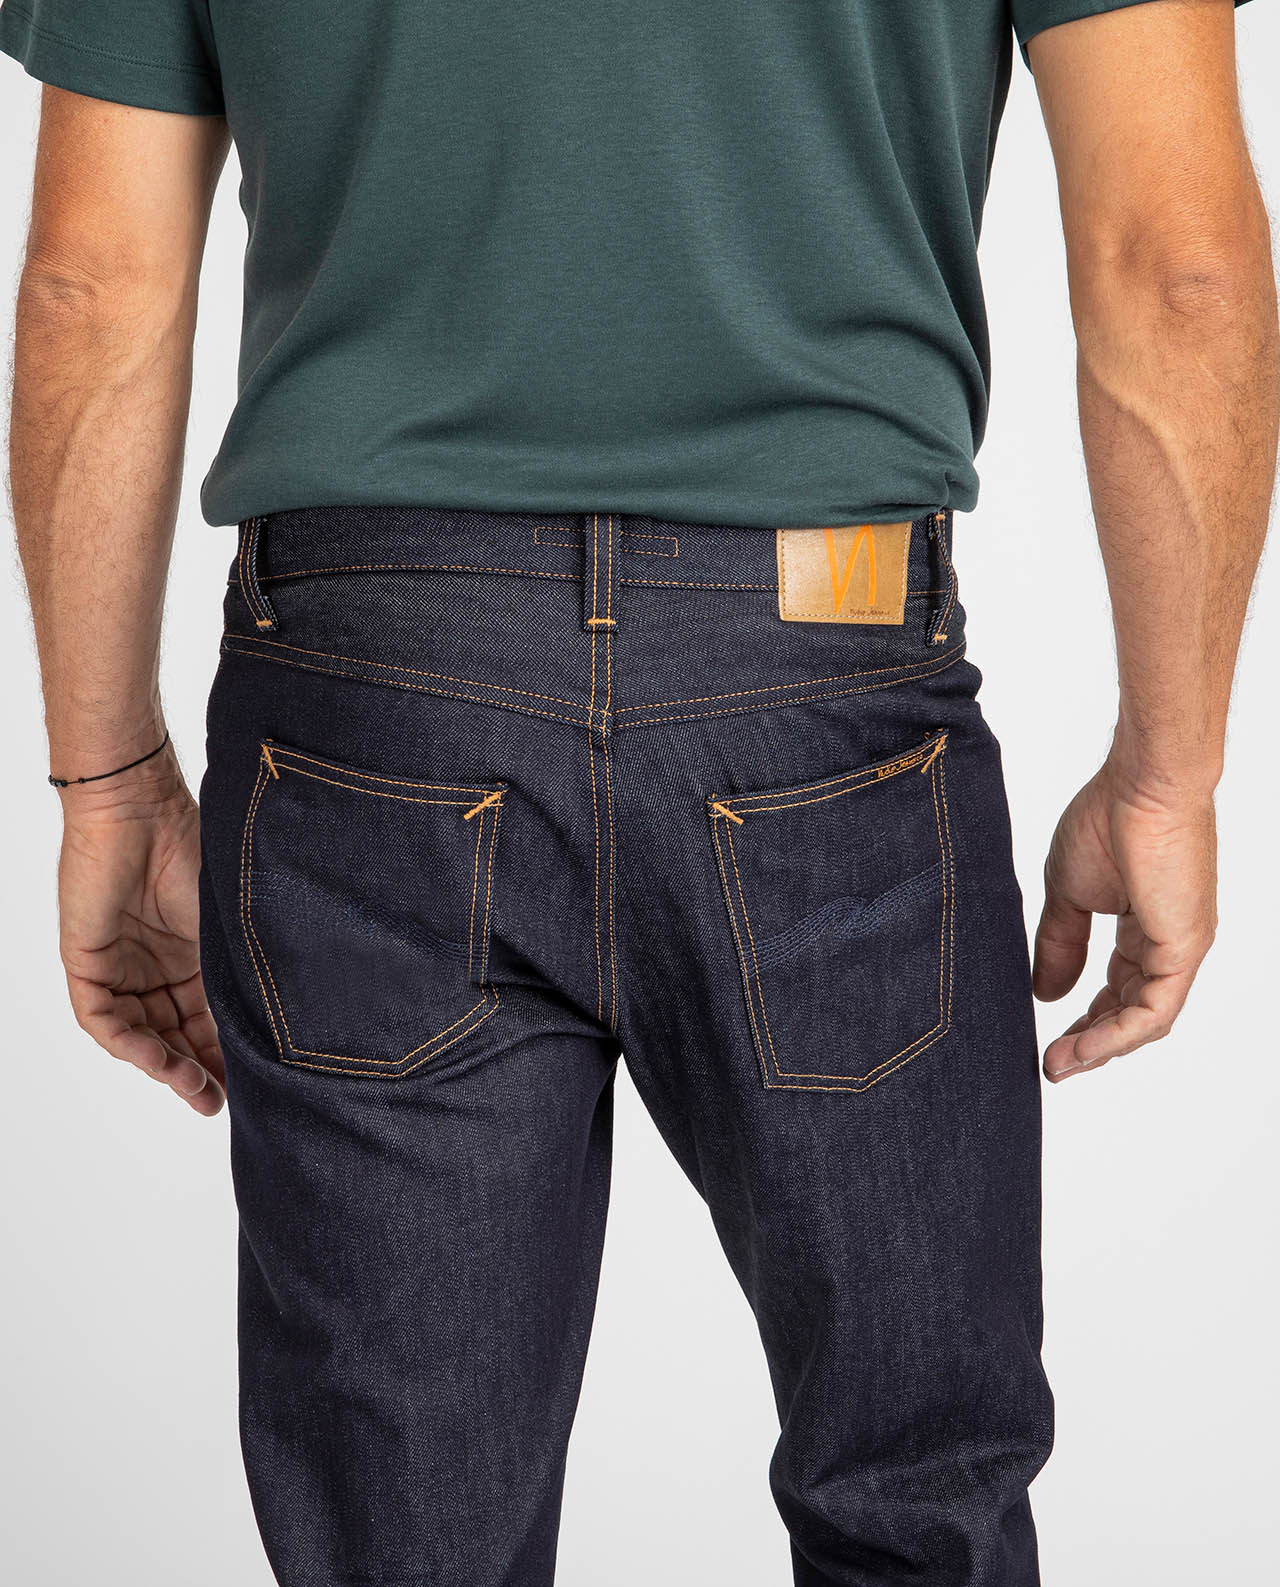 marché commun nudie jeans gritty jackson classic navy denim homme coton biologique éco-responsable éthique